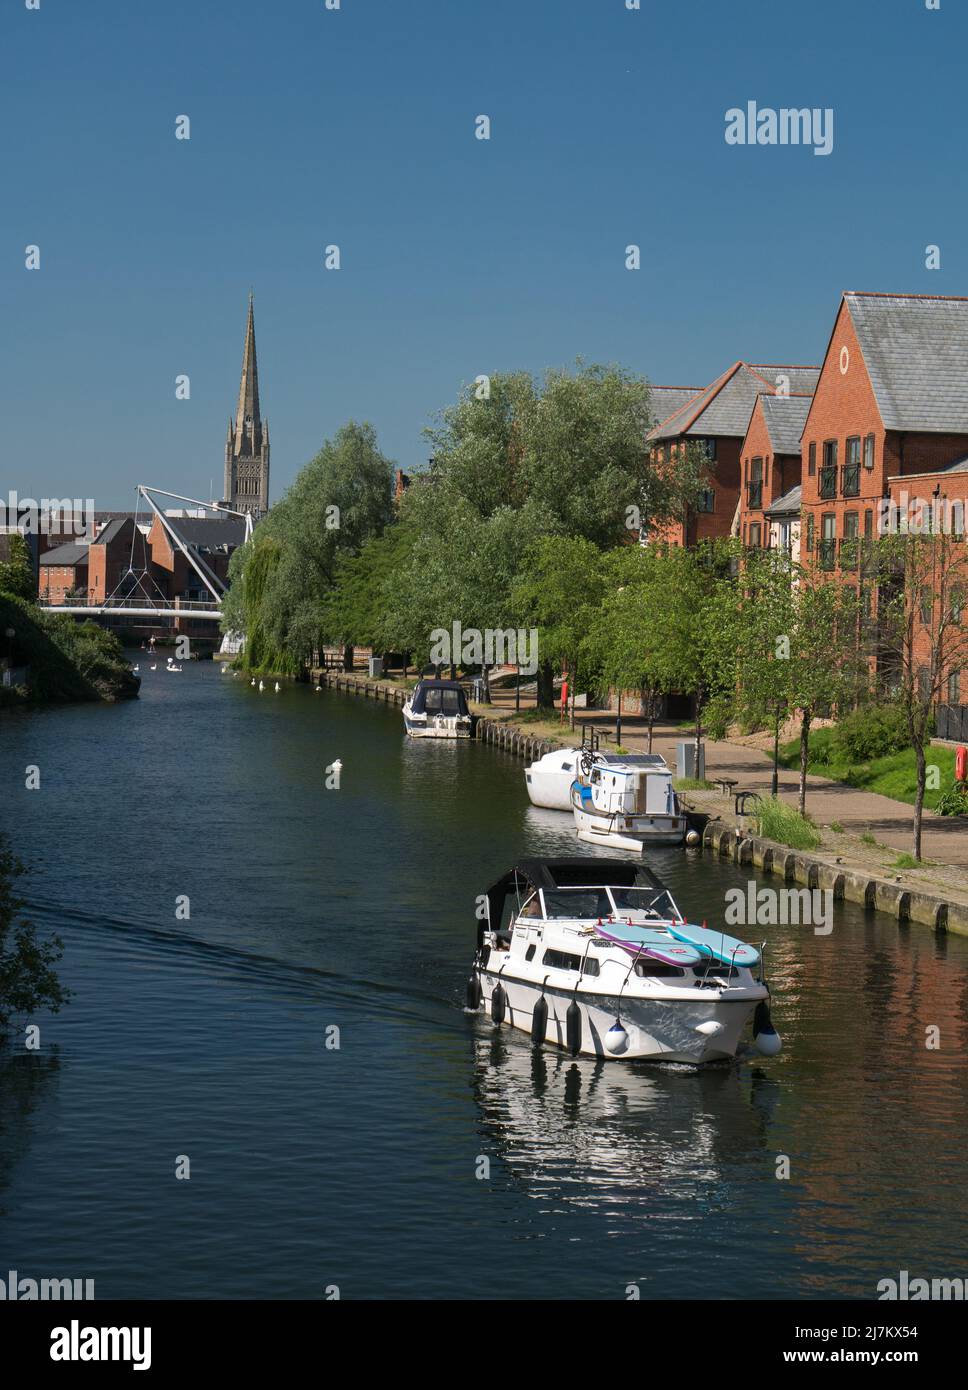 La rivière Wensum dans la ville de Norwich, qui fait partie des Norfolk Broads, avec un nouveau développement et la cathédrale Spire, Norwich, Norfolk, Angleterre, Royaume-Uni Banque D'Images